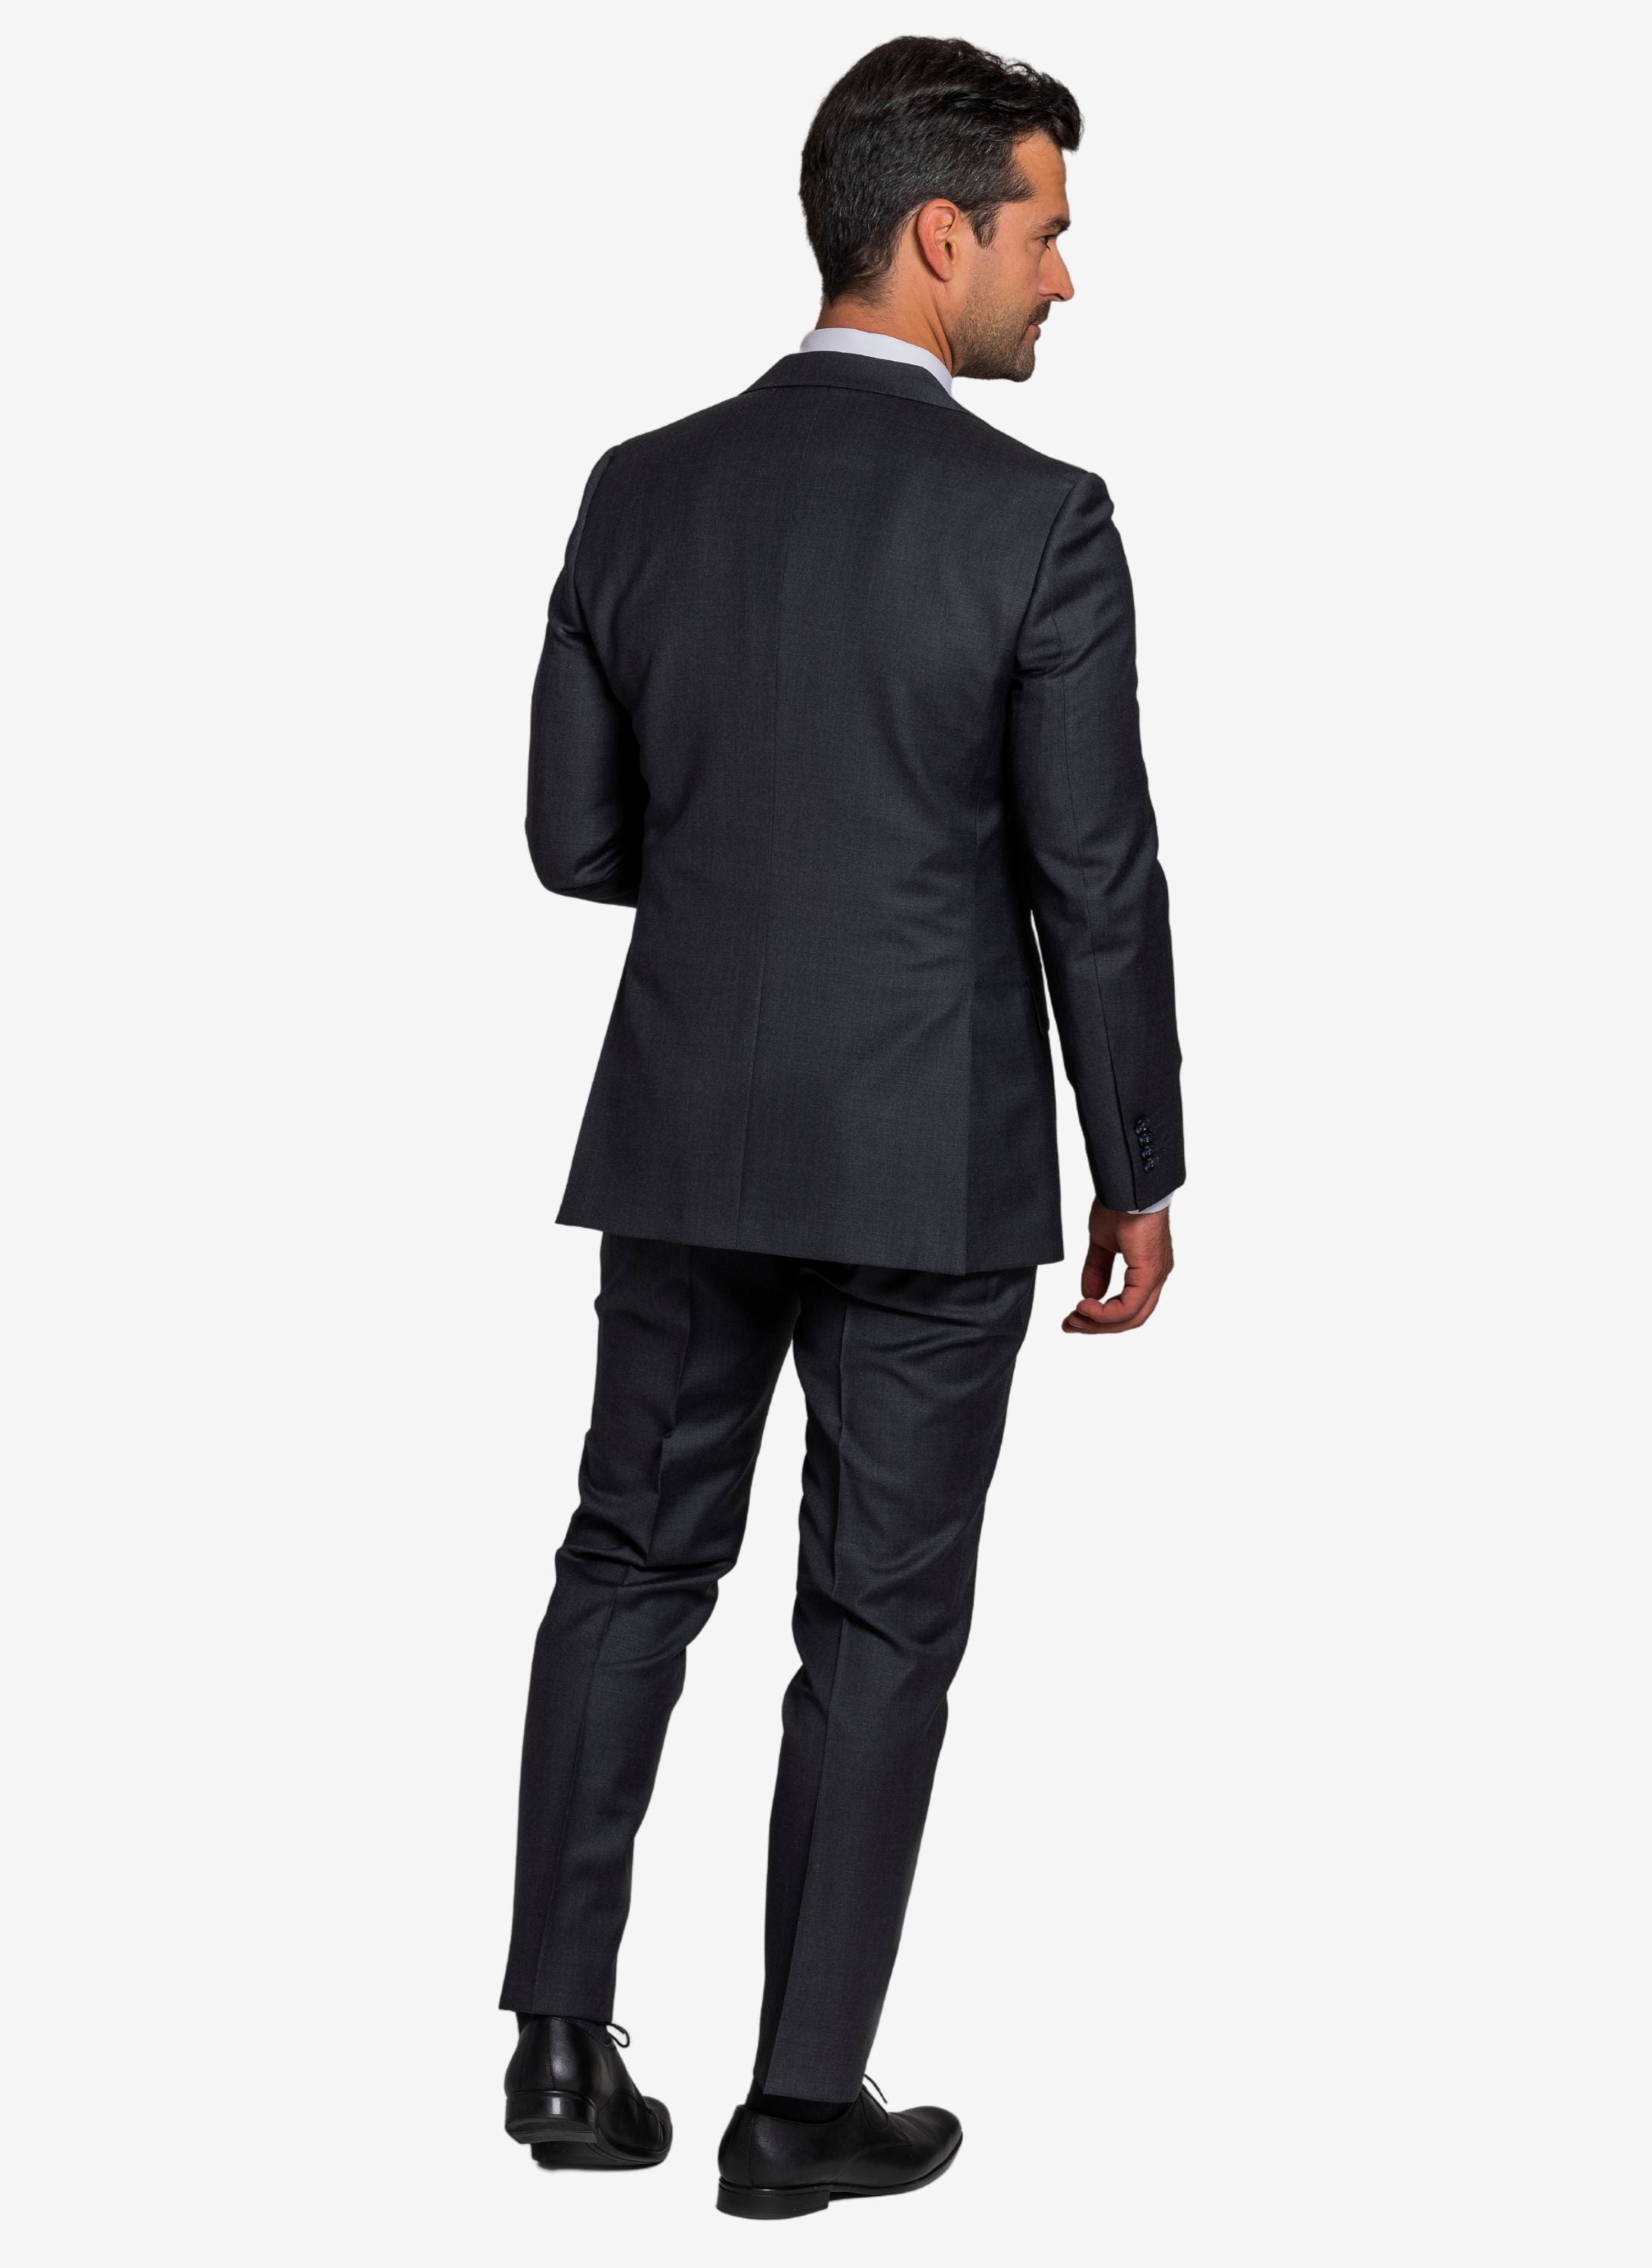 Hochwertiger Anzug in anthrazit mit schwarzen Lederschuhen.